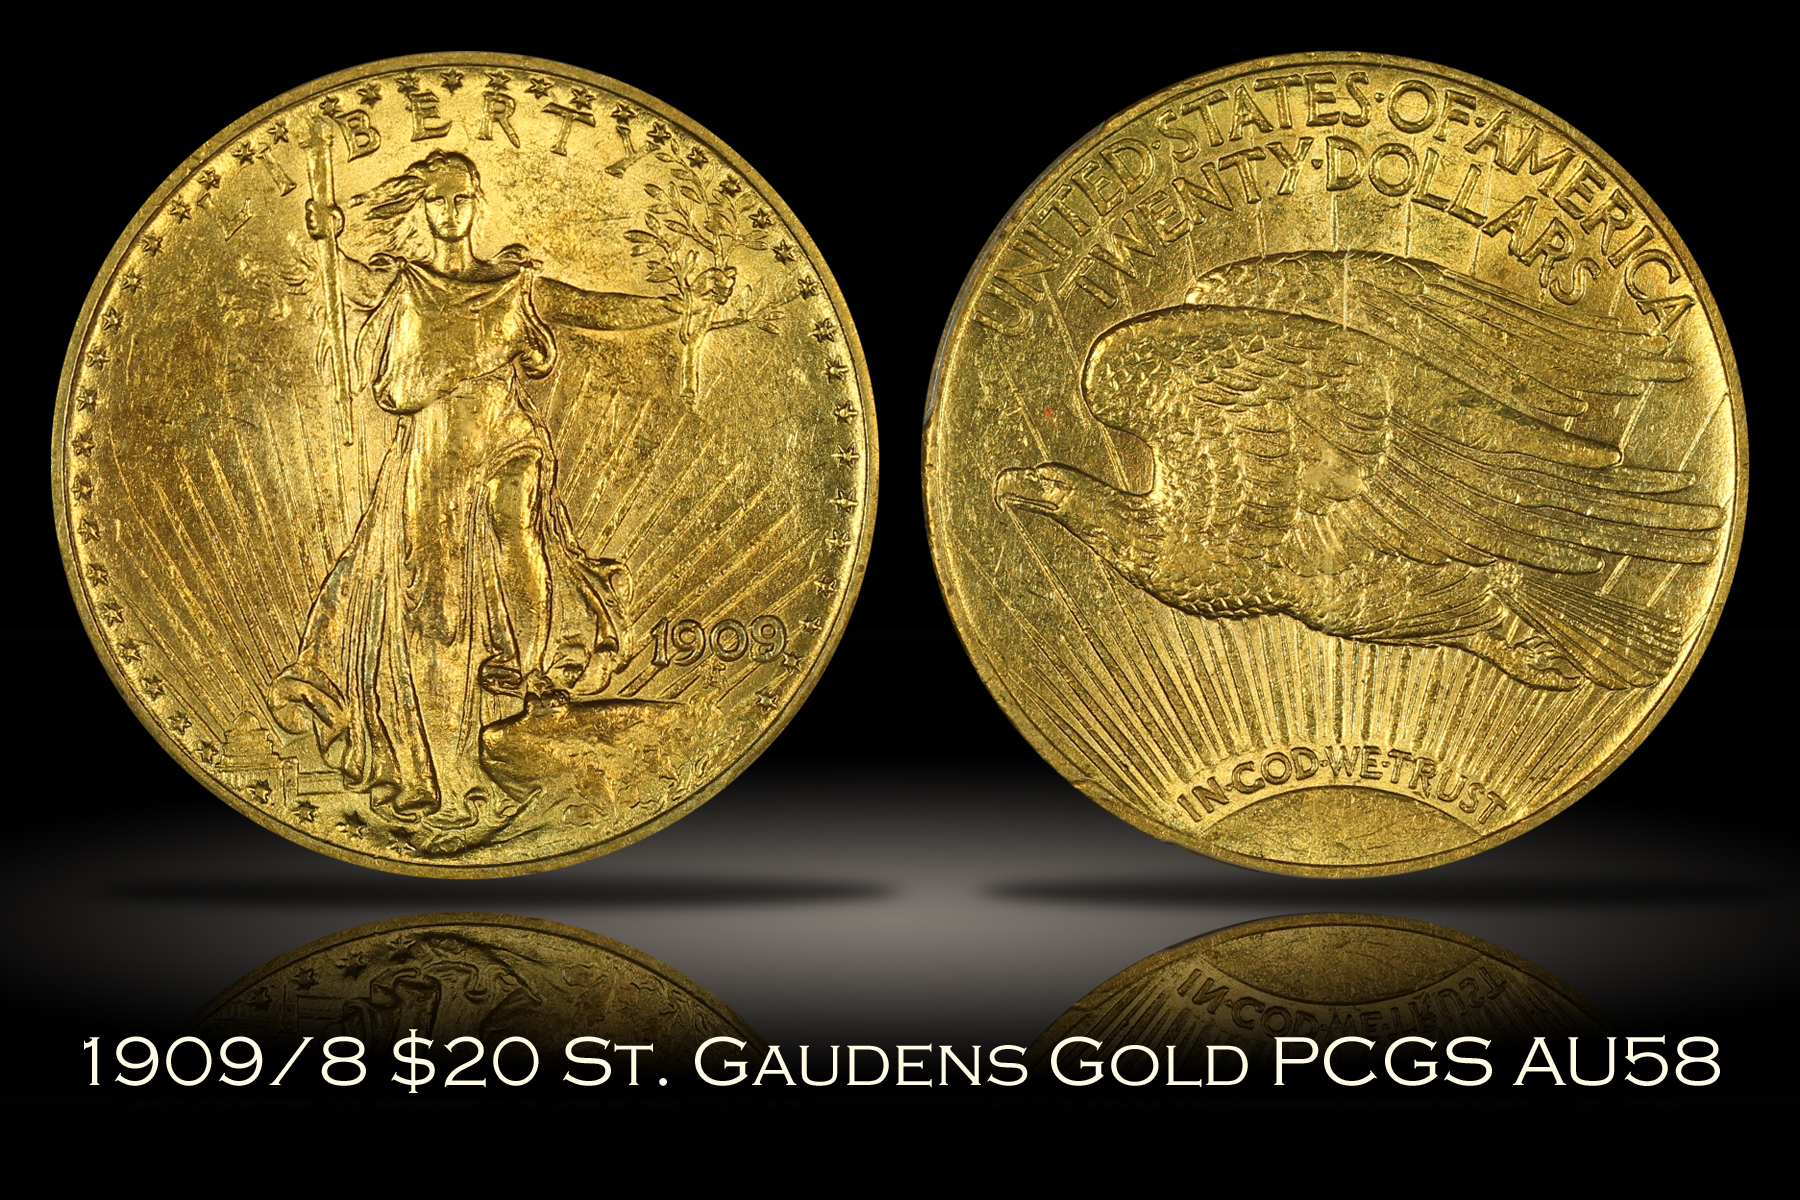 1909/8 $20 St. Gaudens PCGS AU58